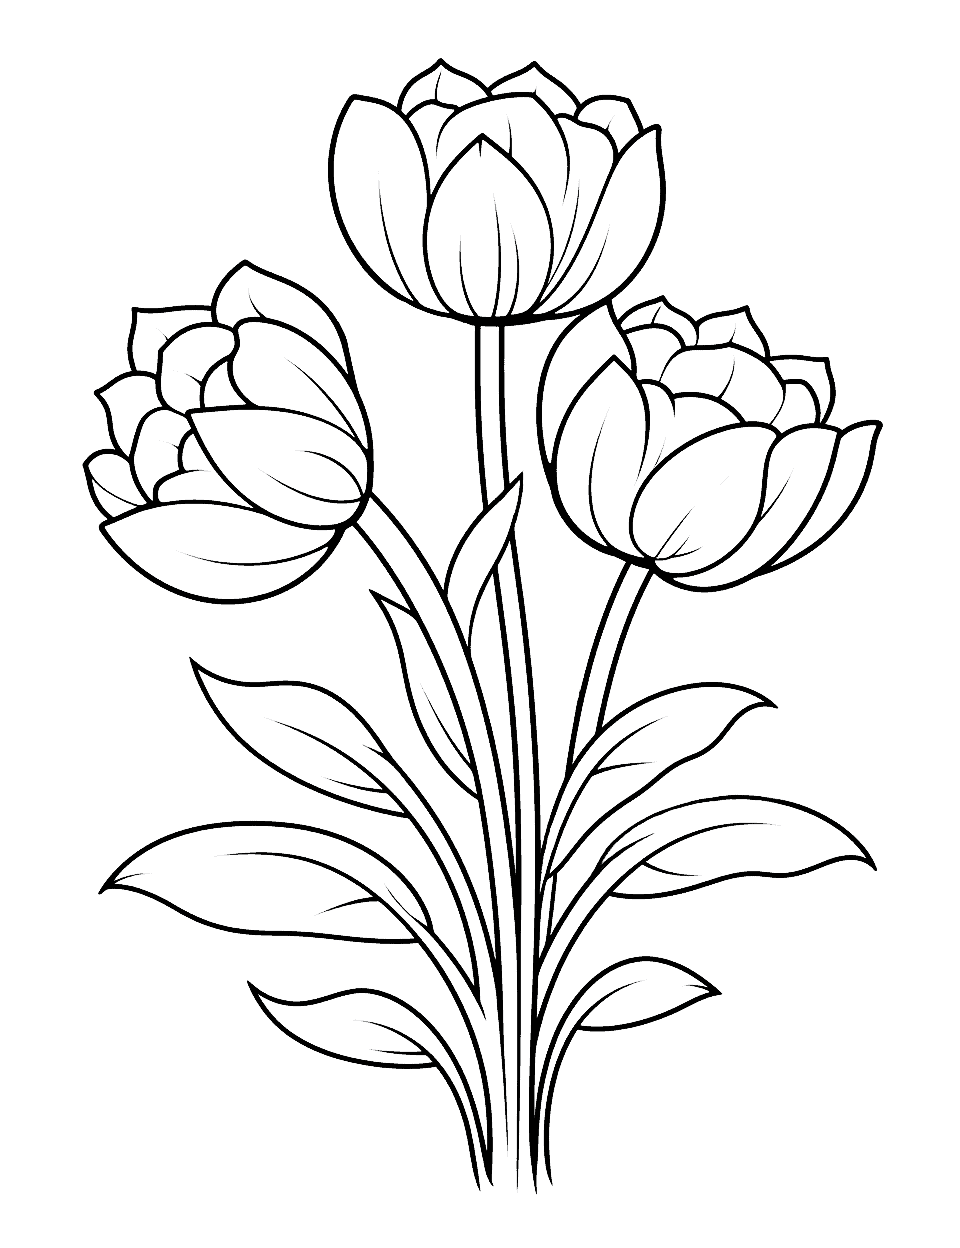 Pretty Tulip Arrangement Flower Coloring Page - A pretty arrangement of tulips to color in.